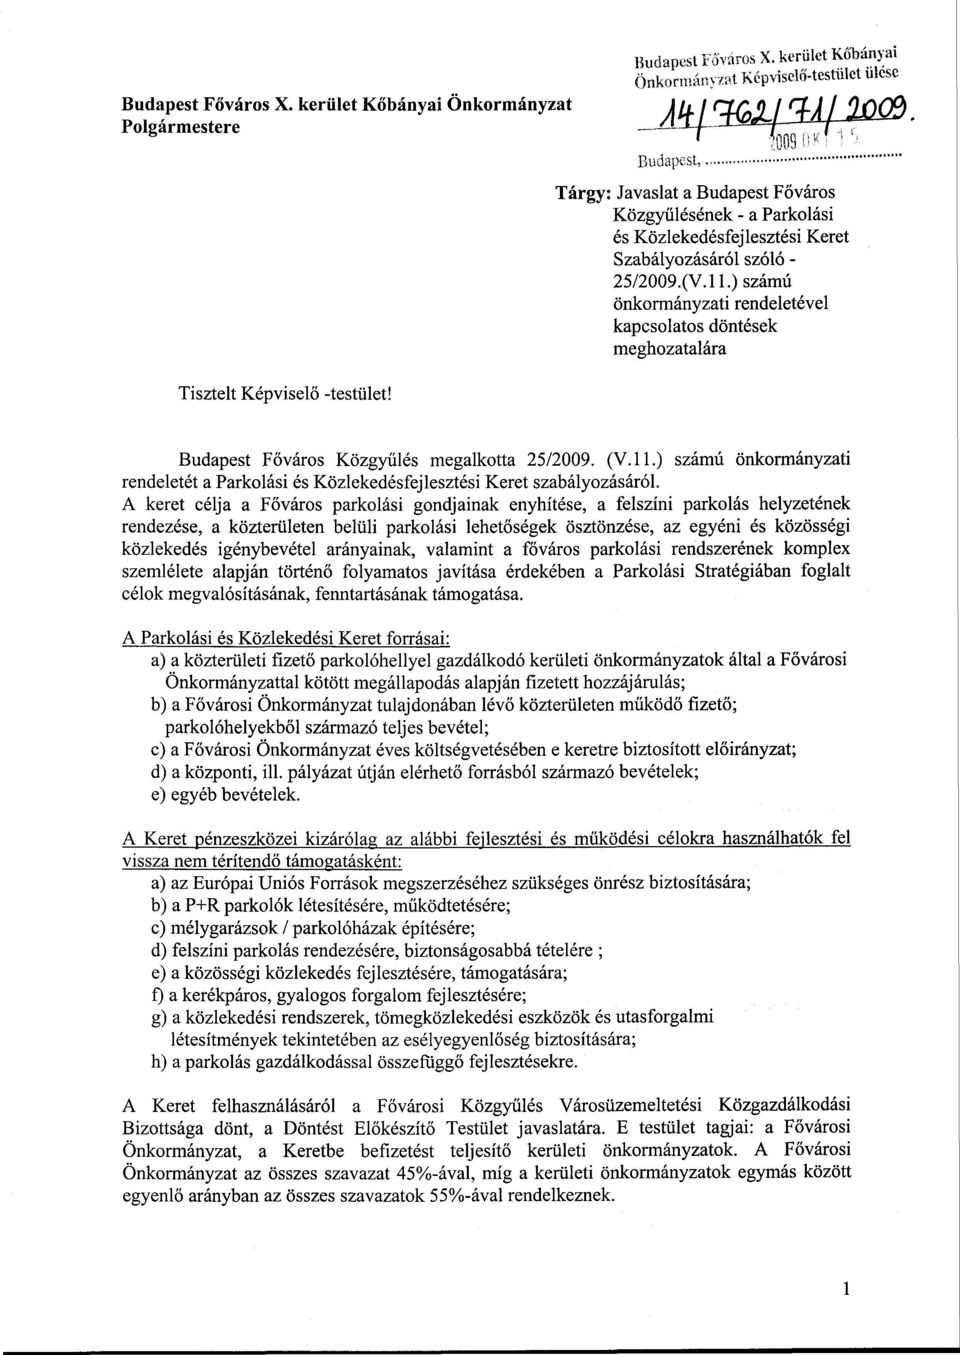 ) számú önkormányzati rendeletével kapcsolatos döntések meghozatalára Budapest Főváros Közgyűlés megalkotta 25/2009. (V.ll.